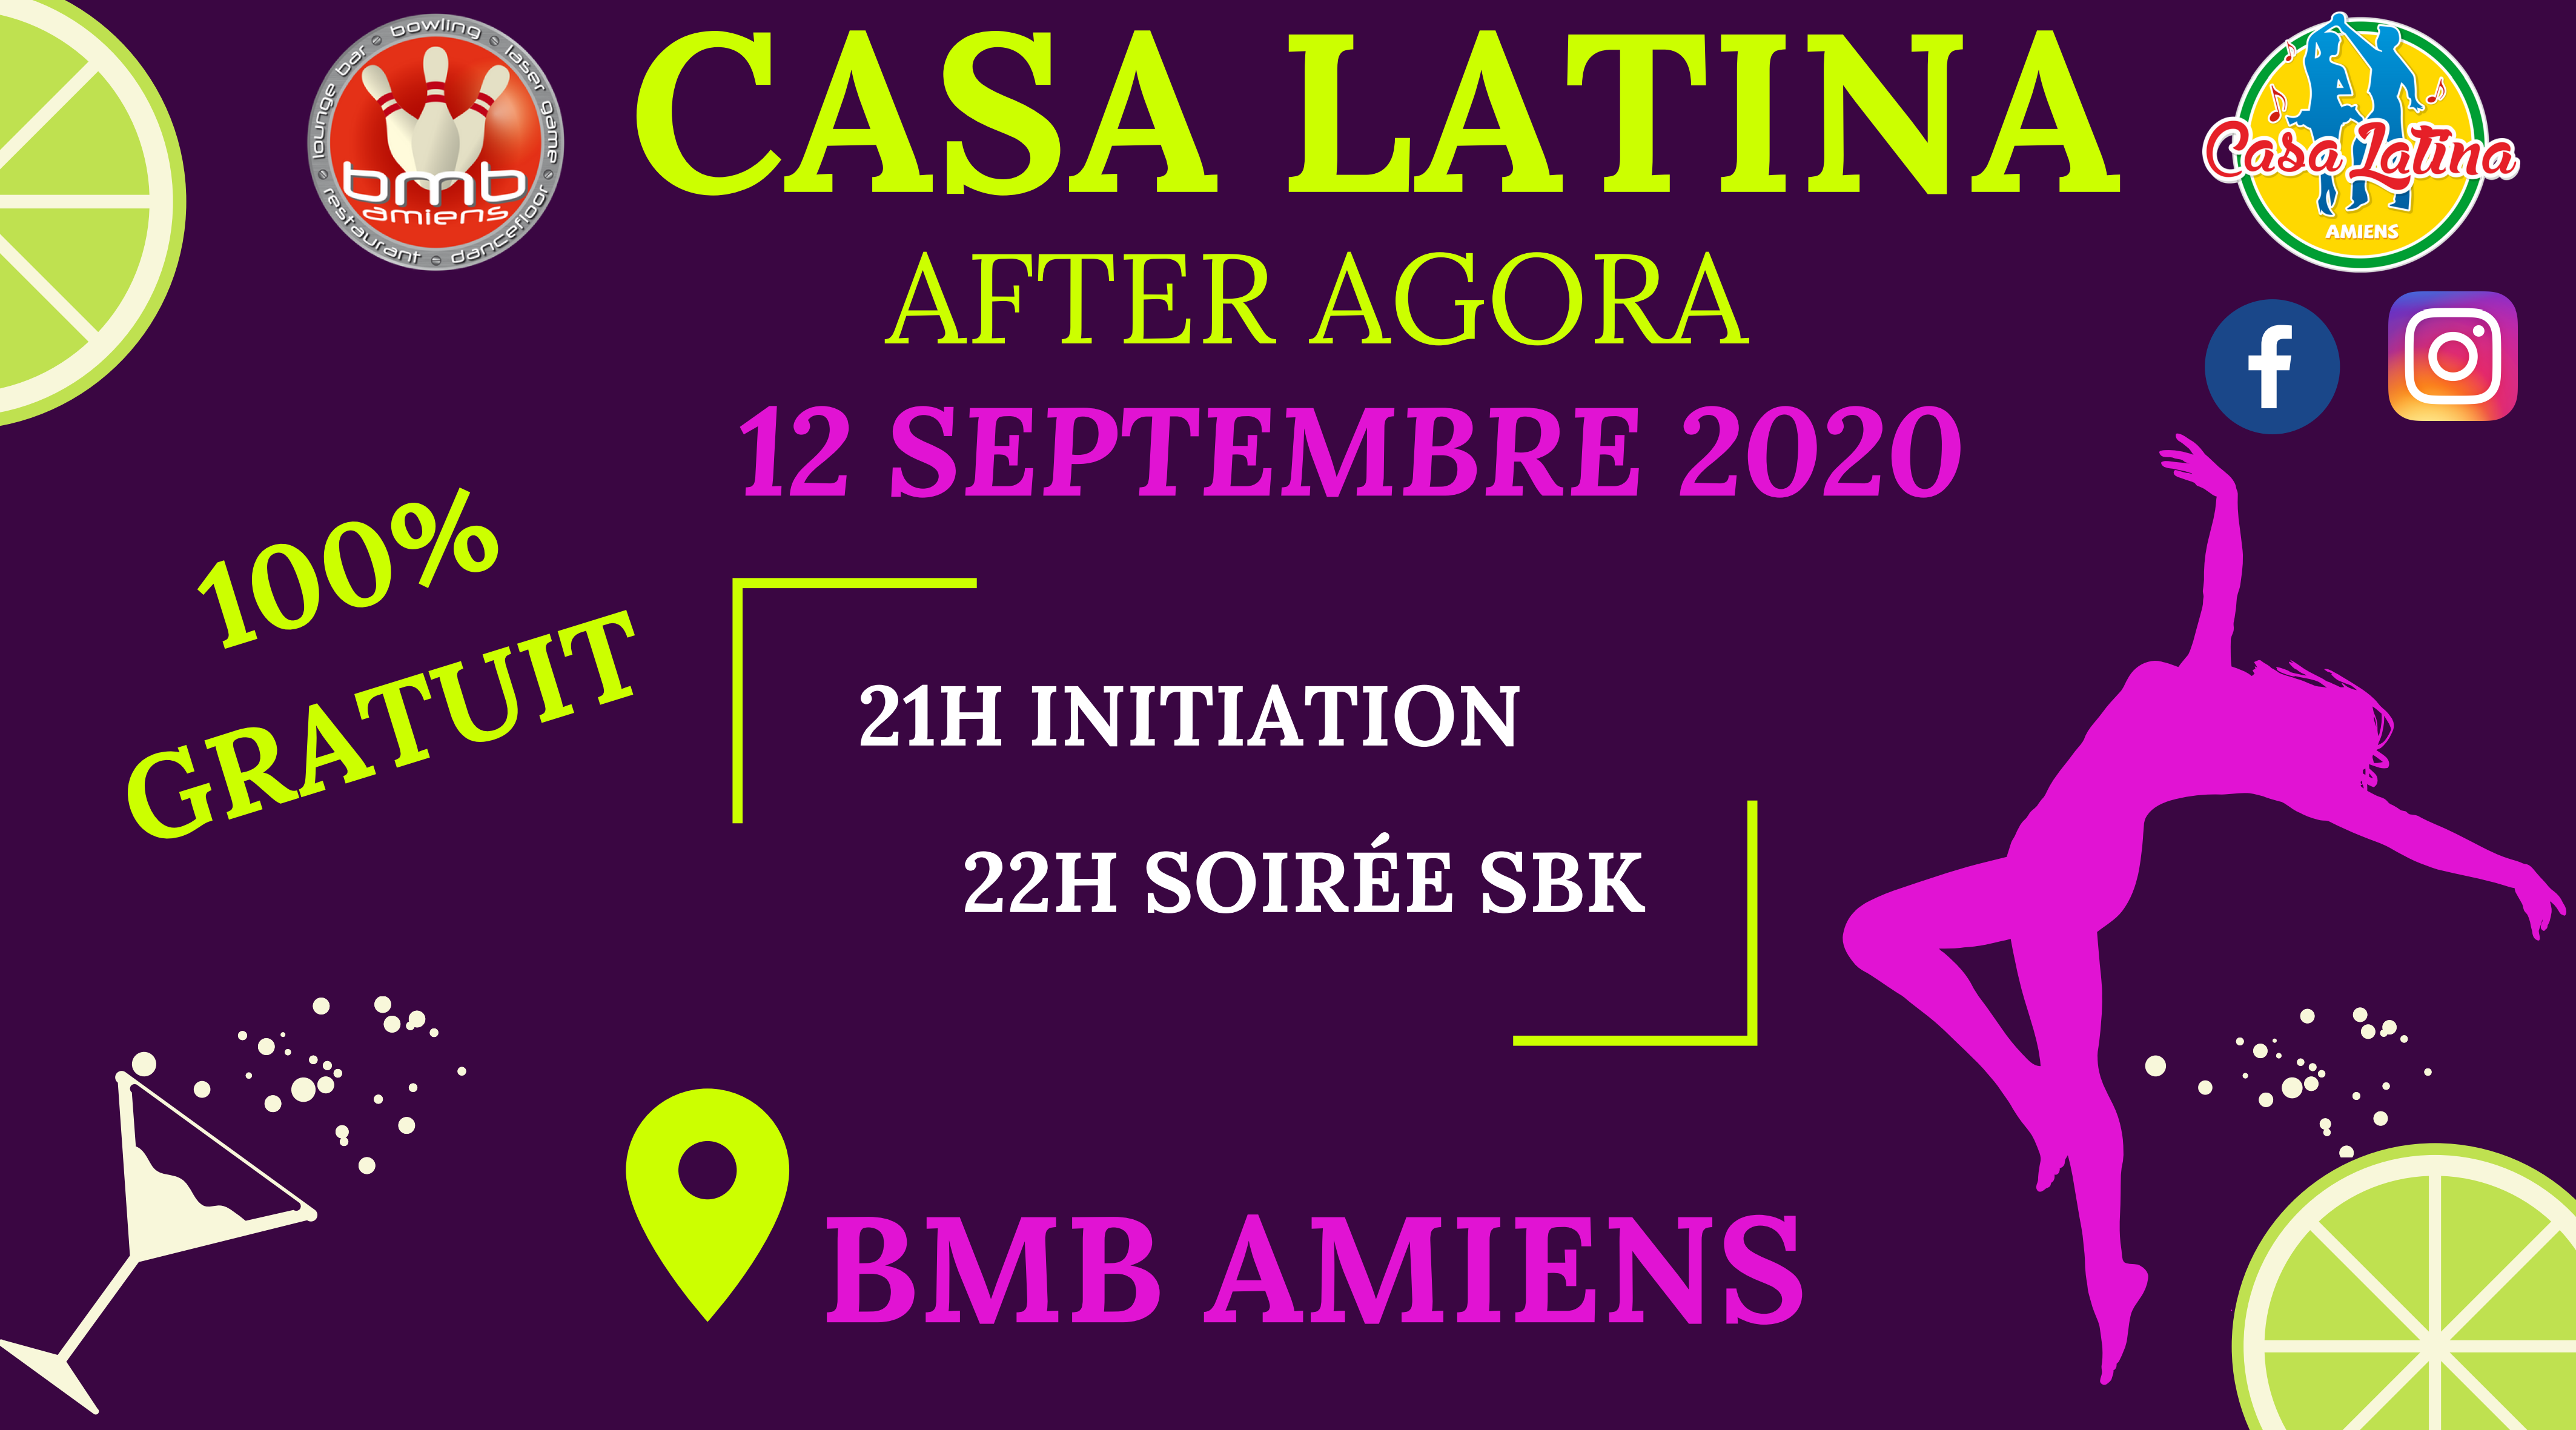 After AGORA - Casa Latina